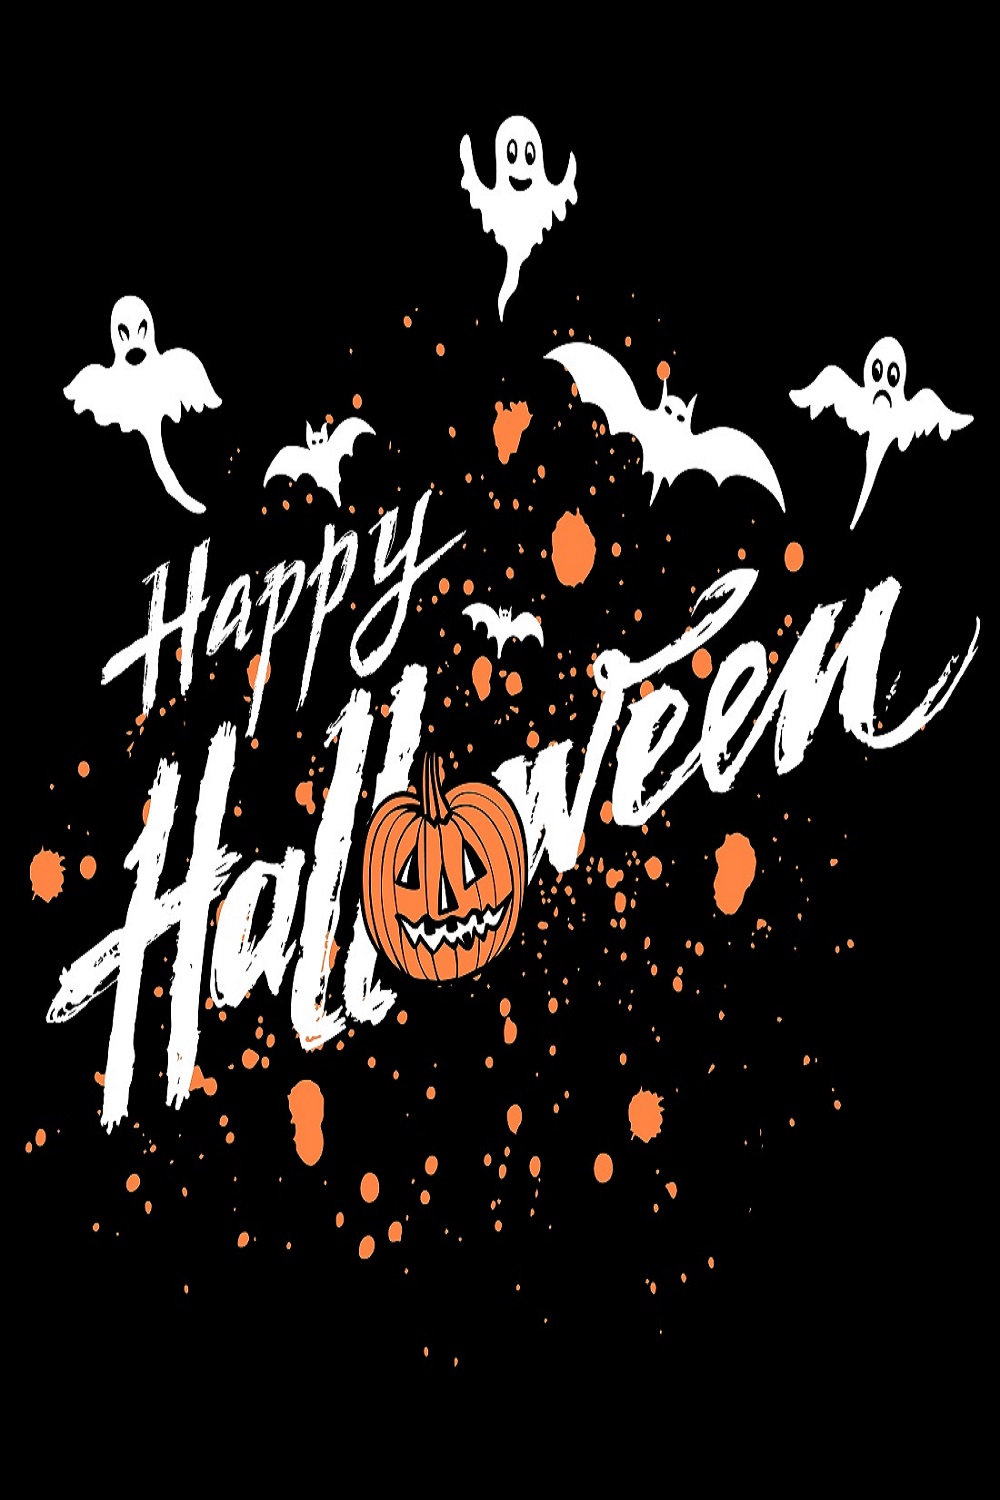 Happy Halloween dark background with orange pumpkin pinterest preview image.